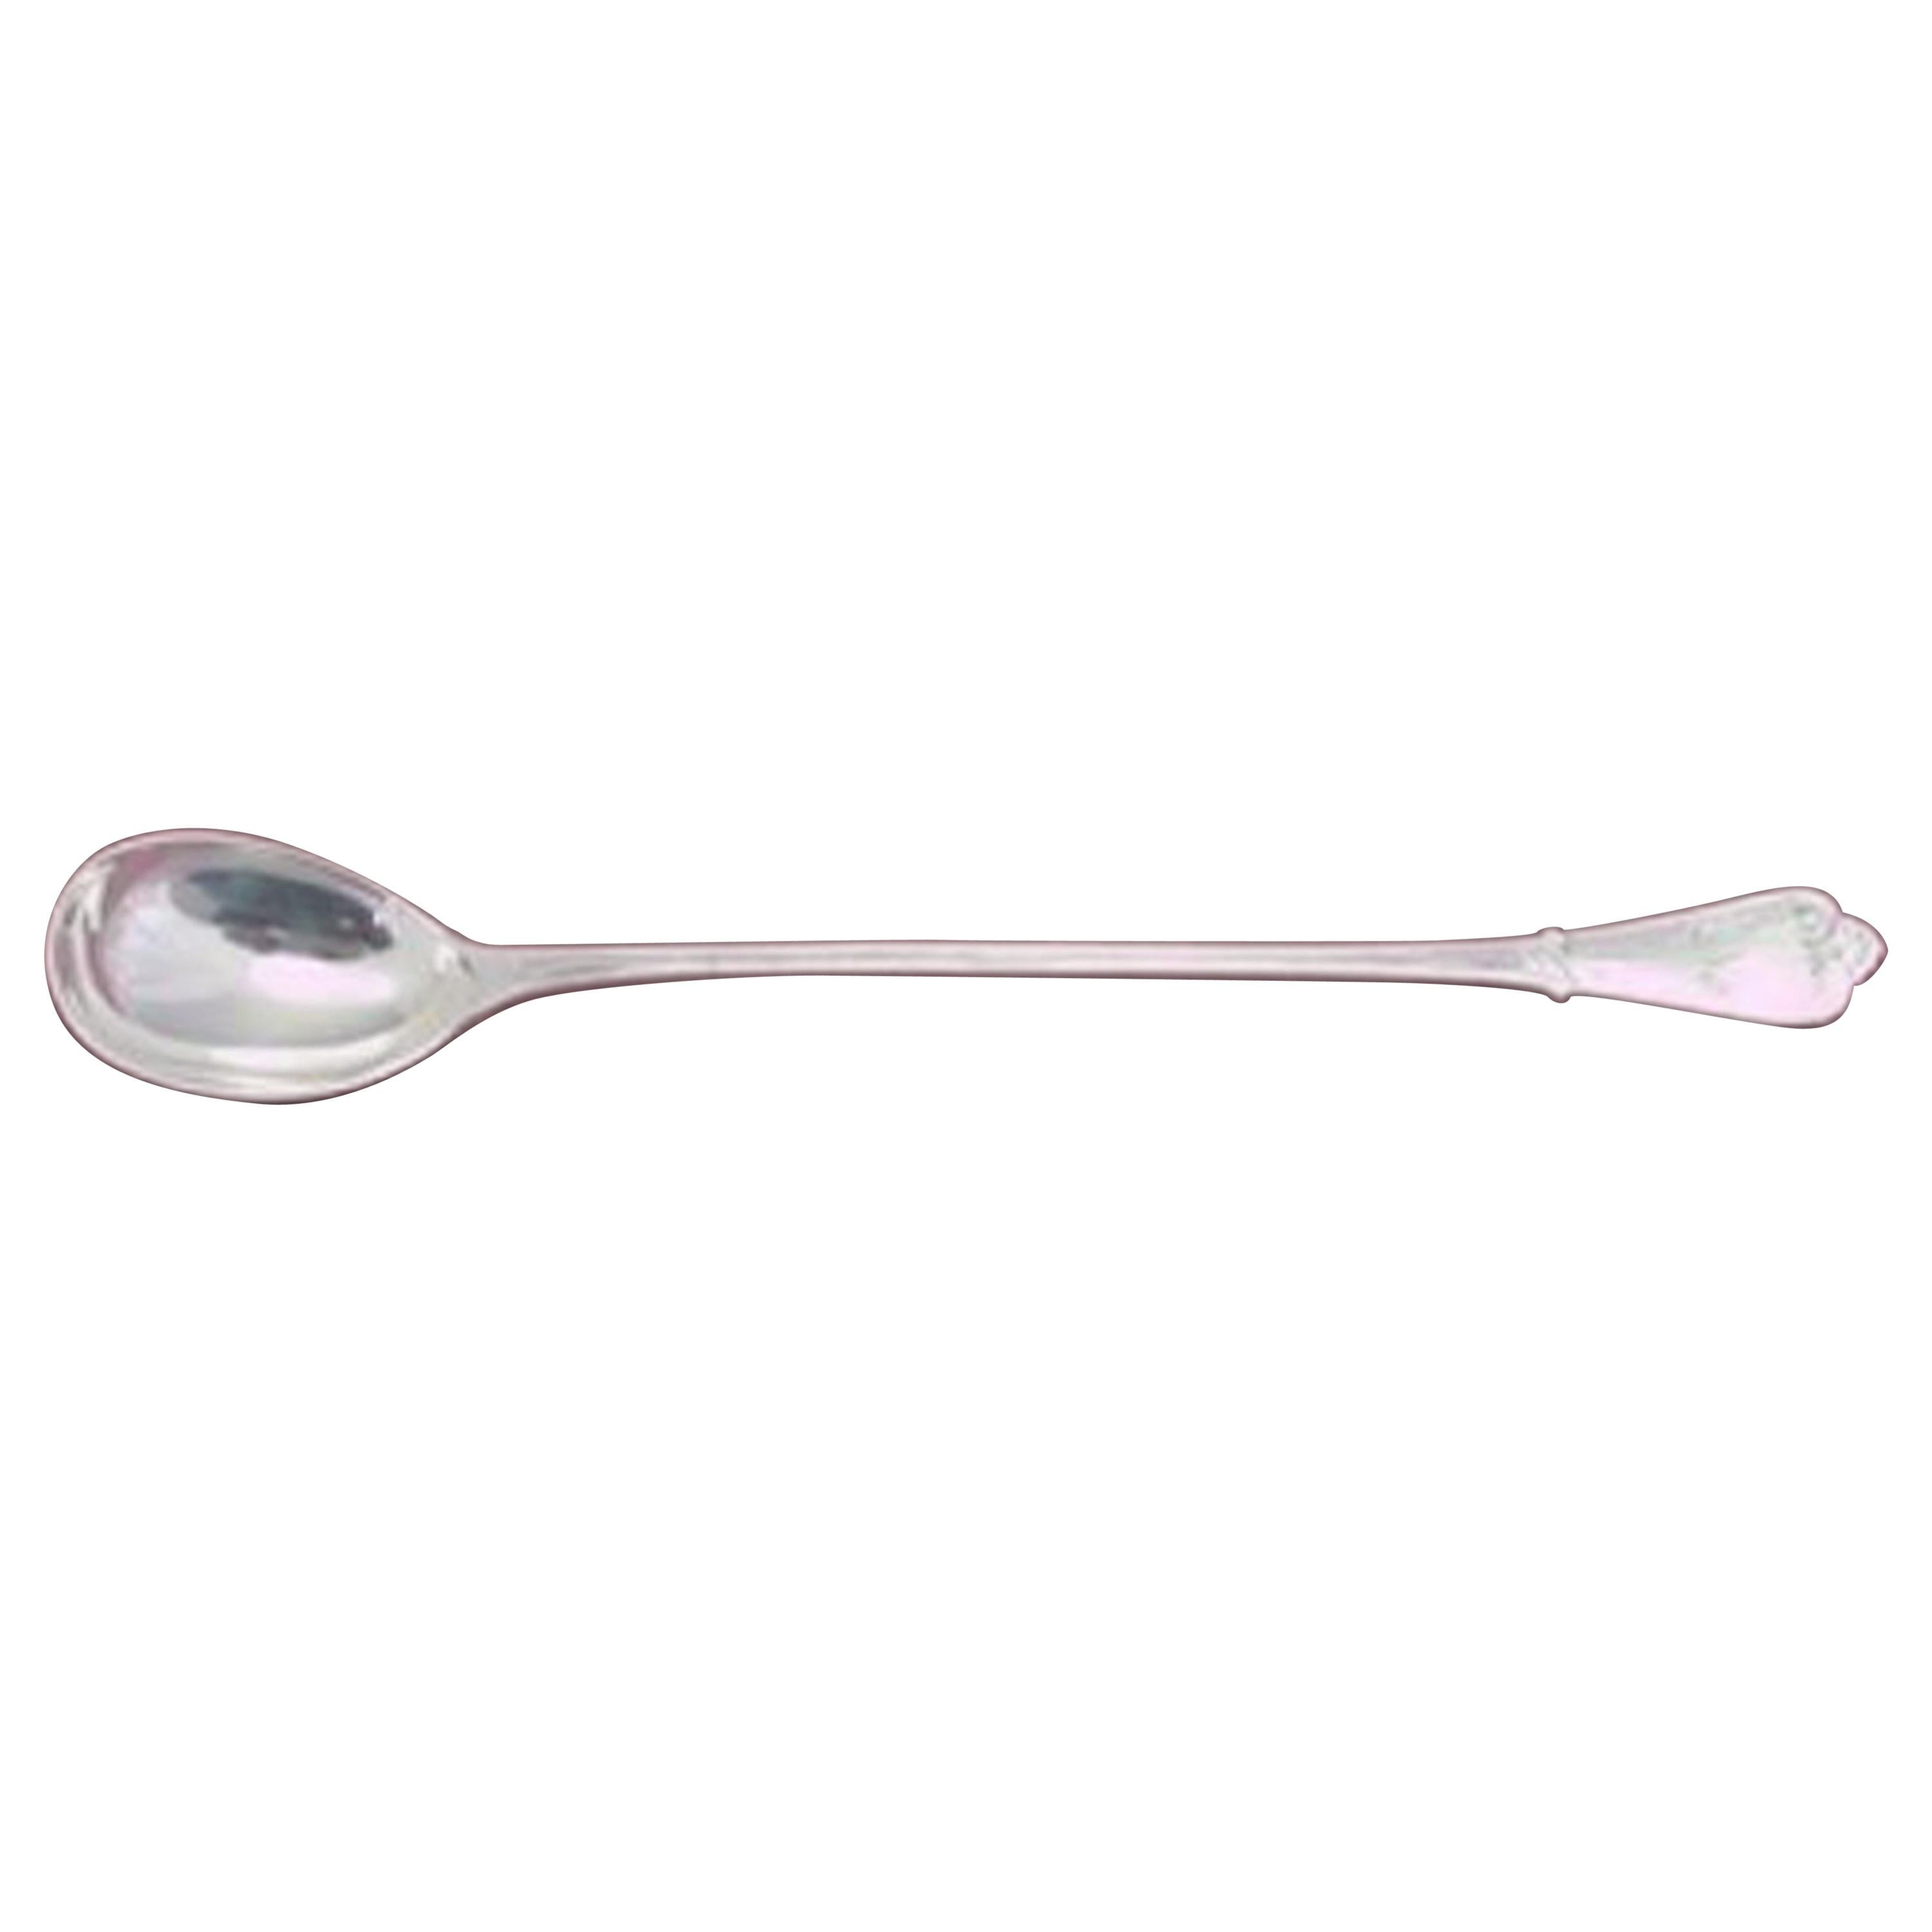 Beekman by Tiffany & Co. Sterling Silver Iced Tea Spoon